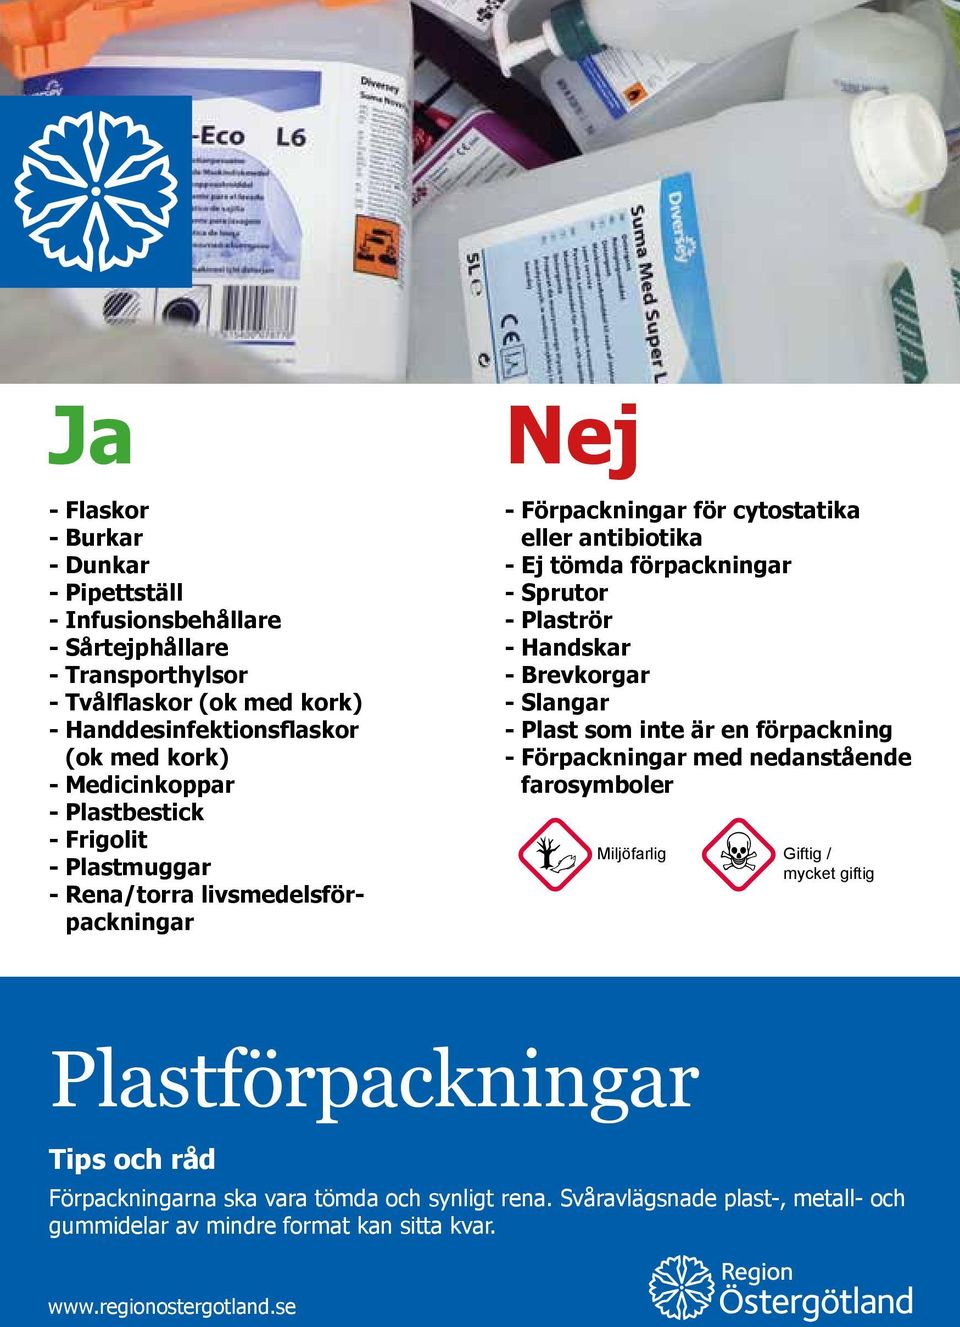 förpackningar - Sprutor - Plaströr - Handskar - Brevkorgar - Slangar - Plast som inte är en förpackning - Förpackningar med nedanstående farosymboler Miljöfarlig